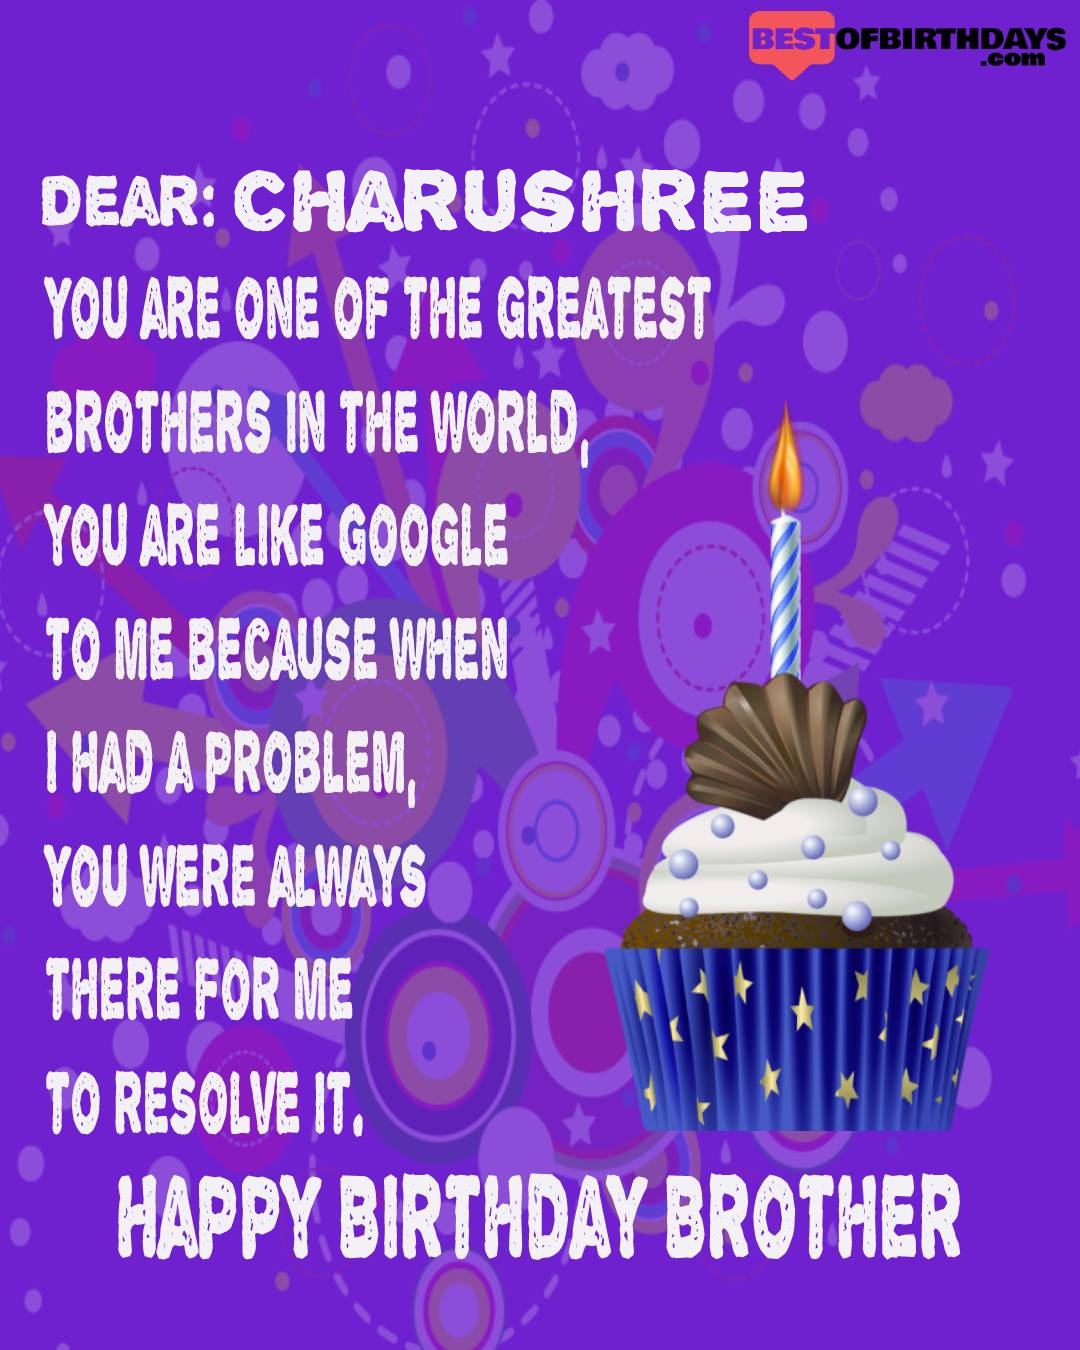 Happy birthday charushree bhai brother bro